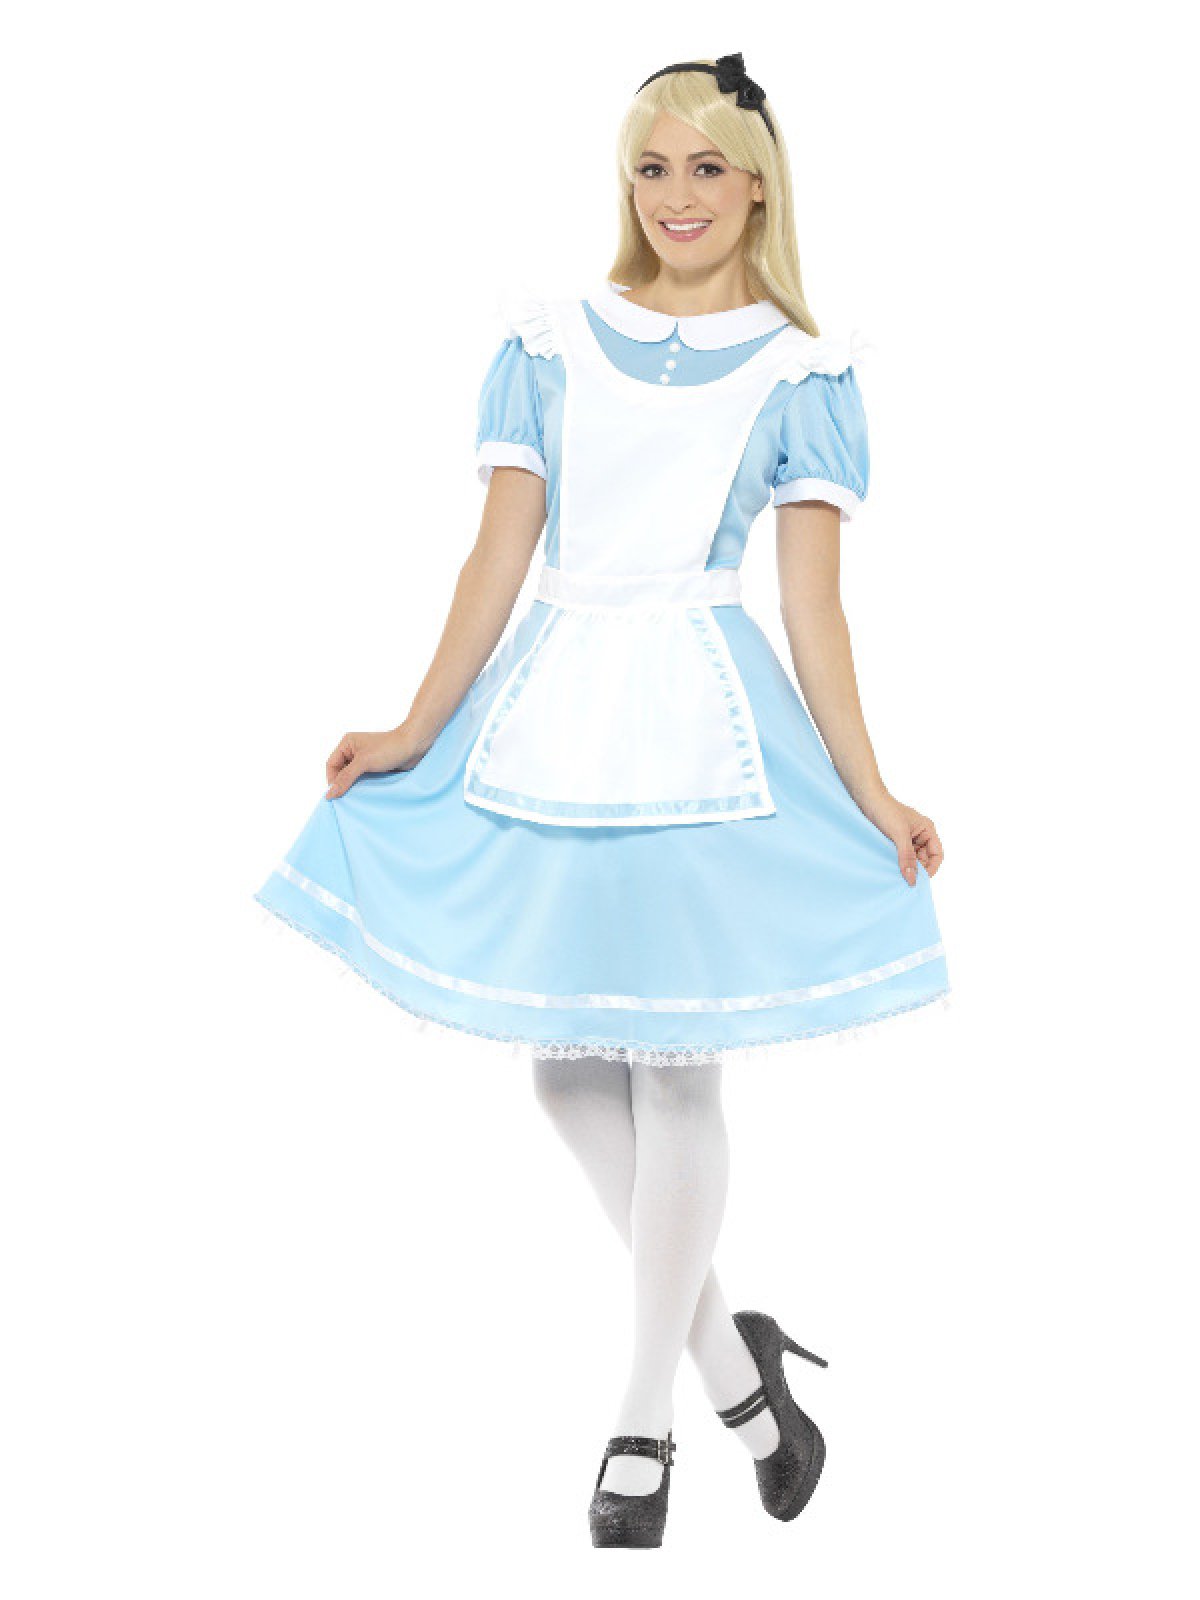 Alice i kostumer - Temashop.dk